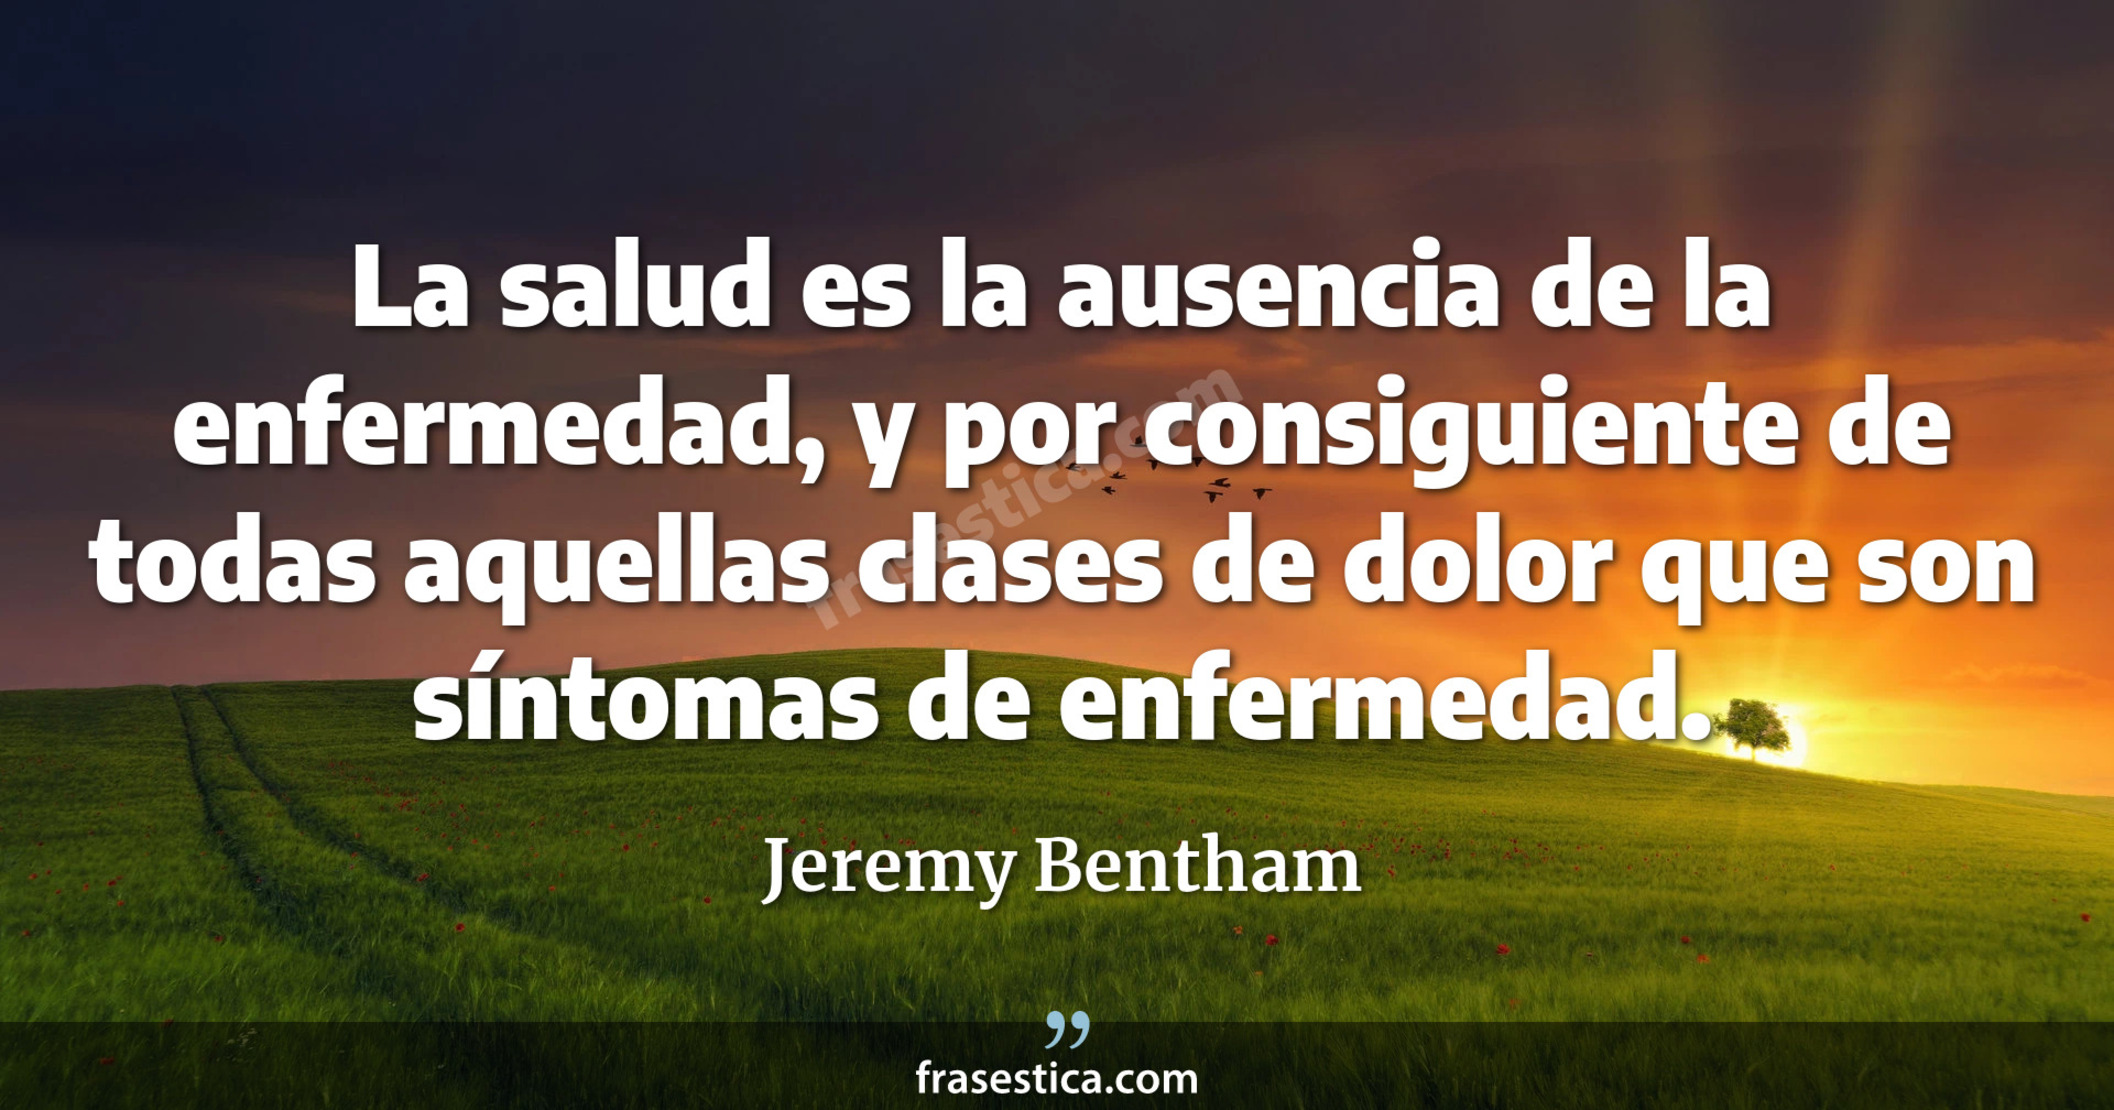 La salud es la ausencia de la enfermedad, y por consiguiente de todas aquellas clases de dolor que son síntomas de enfermedad. - Jeremy Bentham